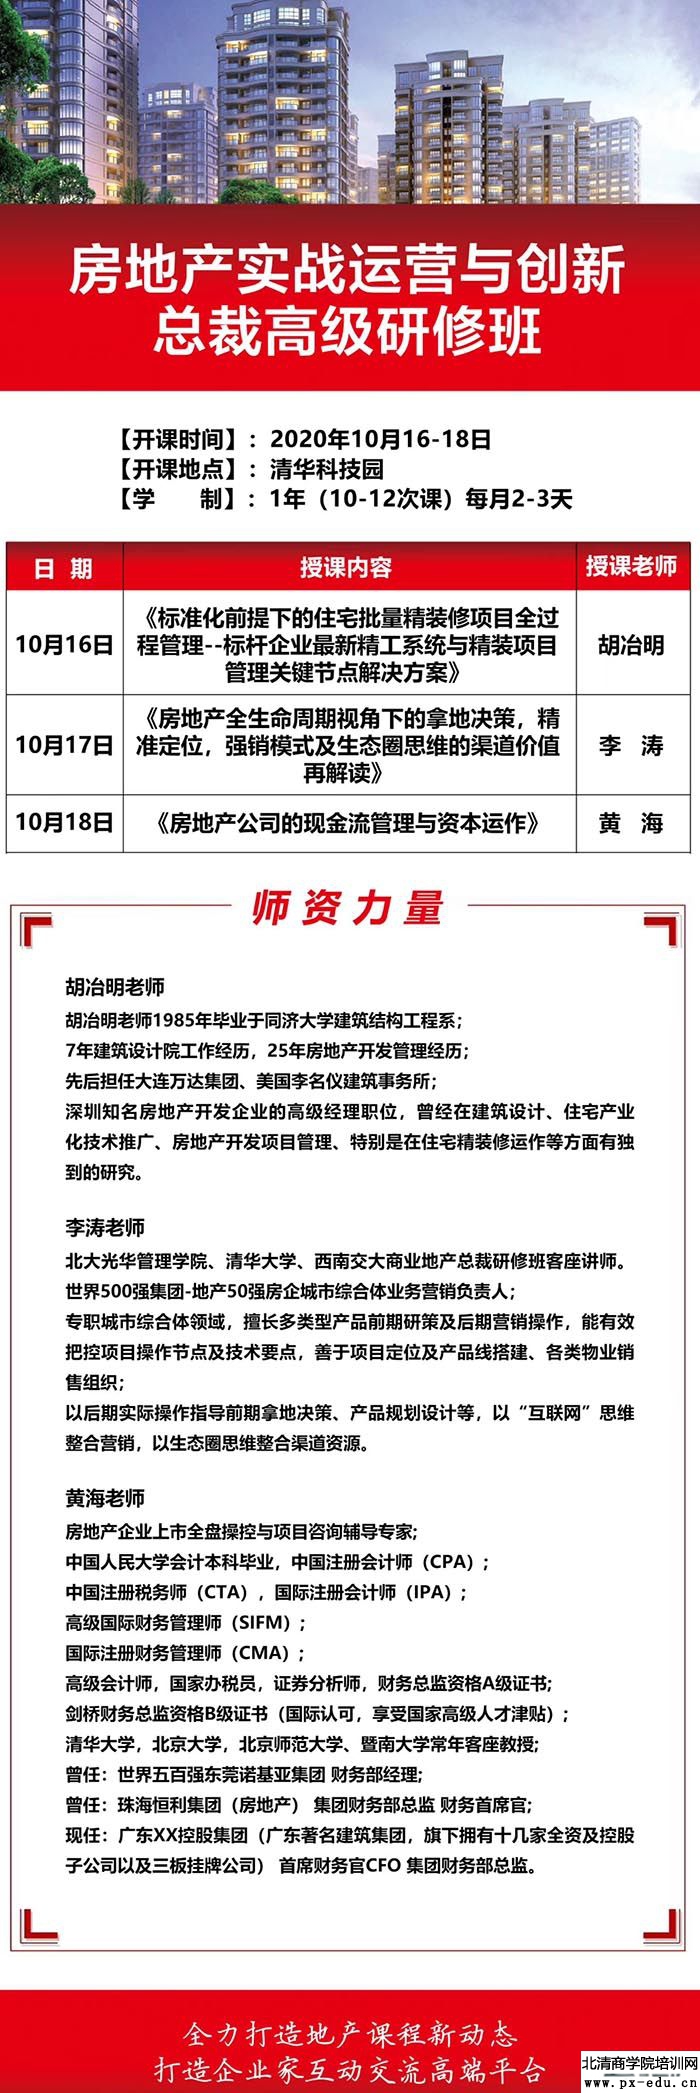 10月16-18日清大房地产实战运营与创新总裁班清华科技园开课